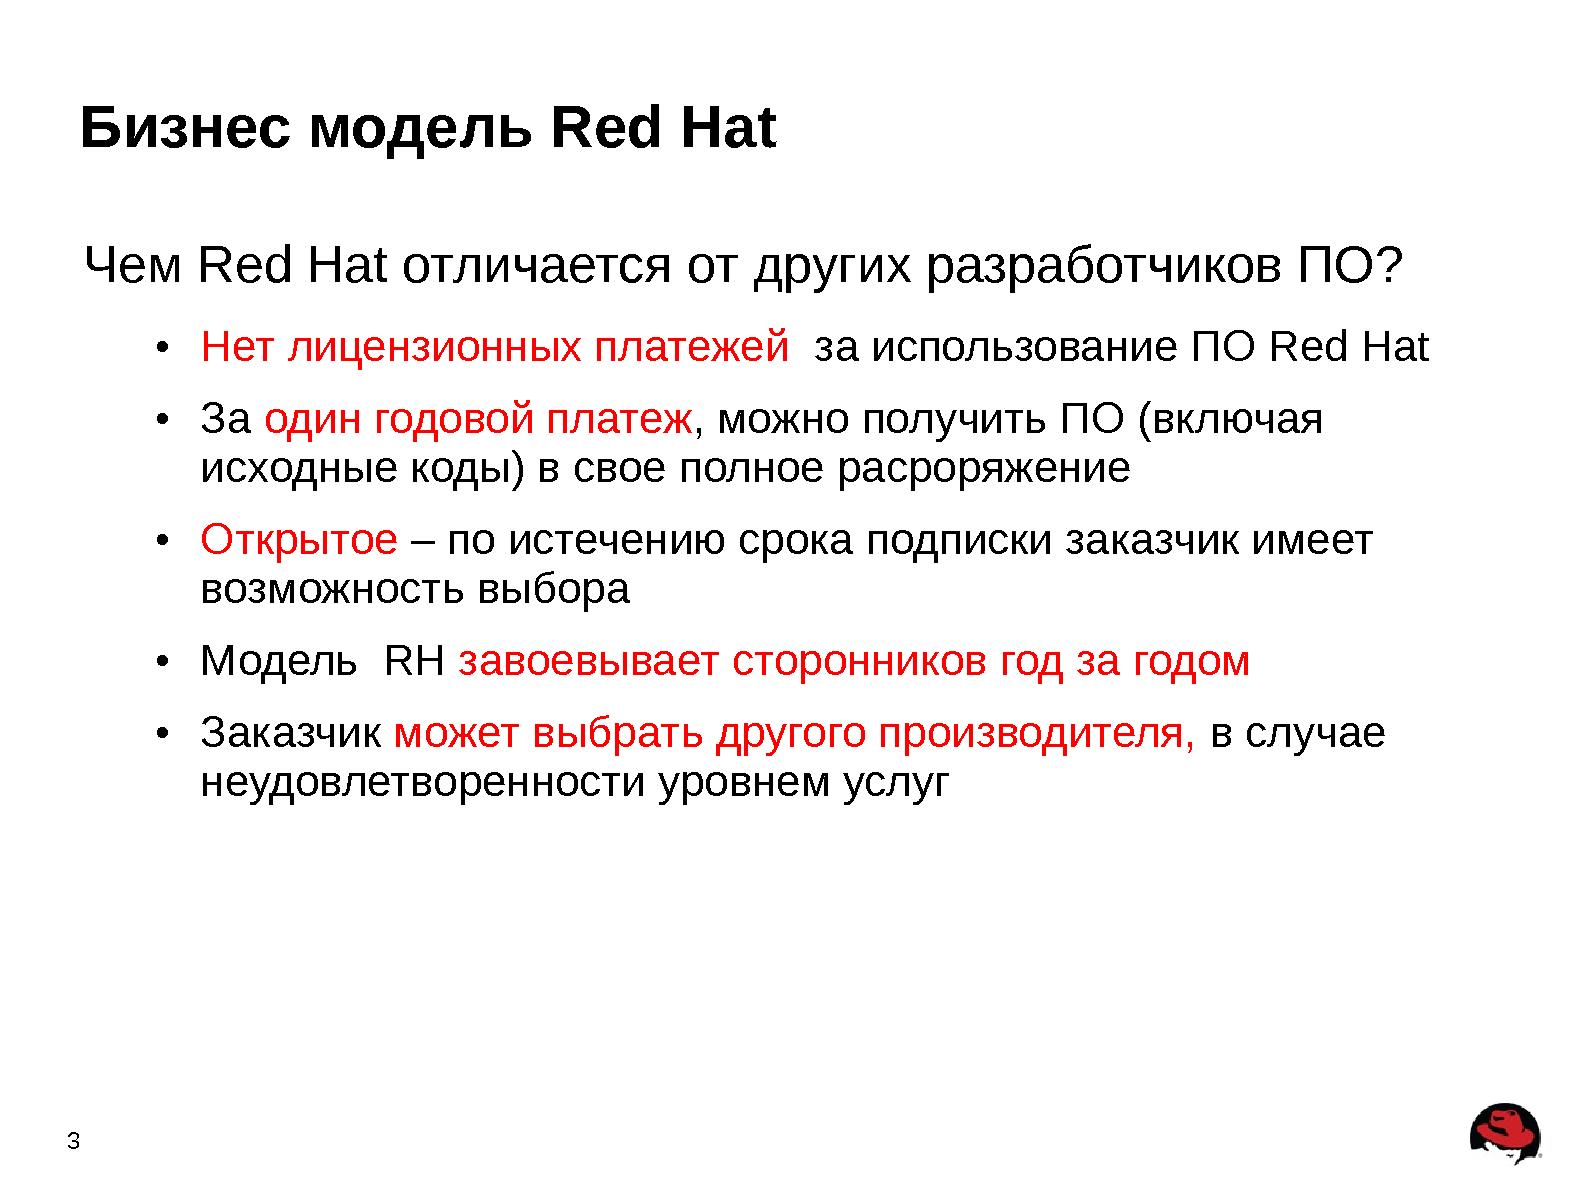 Файл:Портфель продуктов для построения IT-инфраструктуры предприятия (Андрей Маркелов, ROSS-2013).pdf